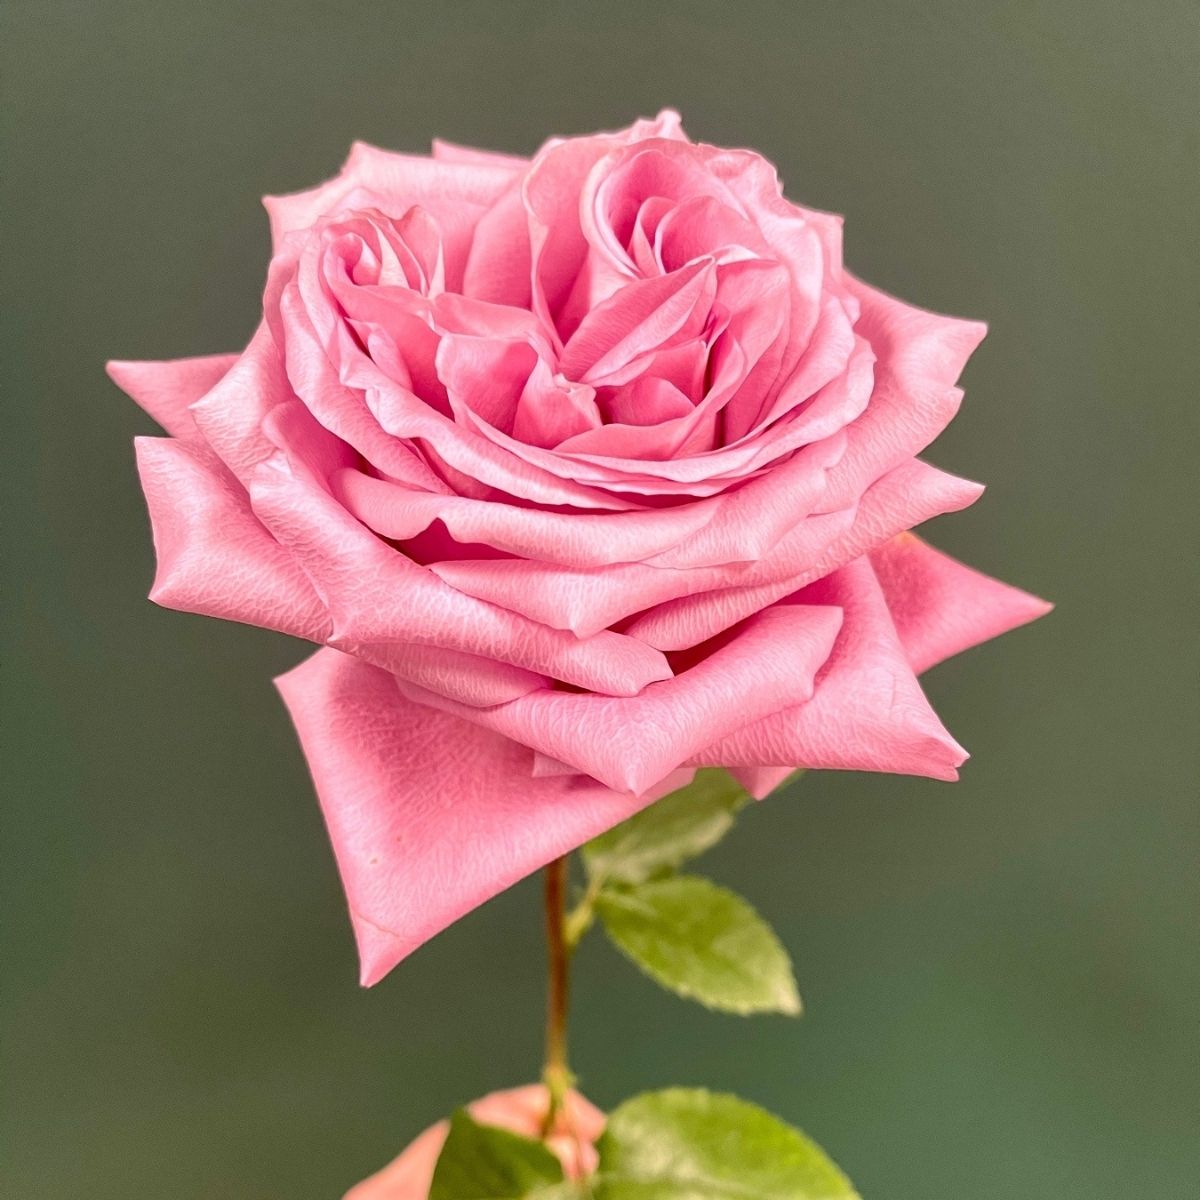 Farm Direct Premium verse rozen uit Ecuador